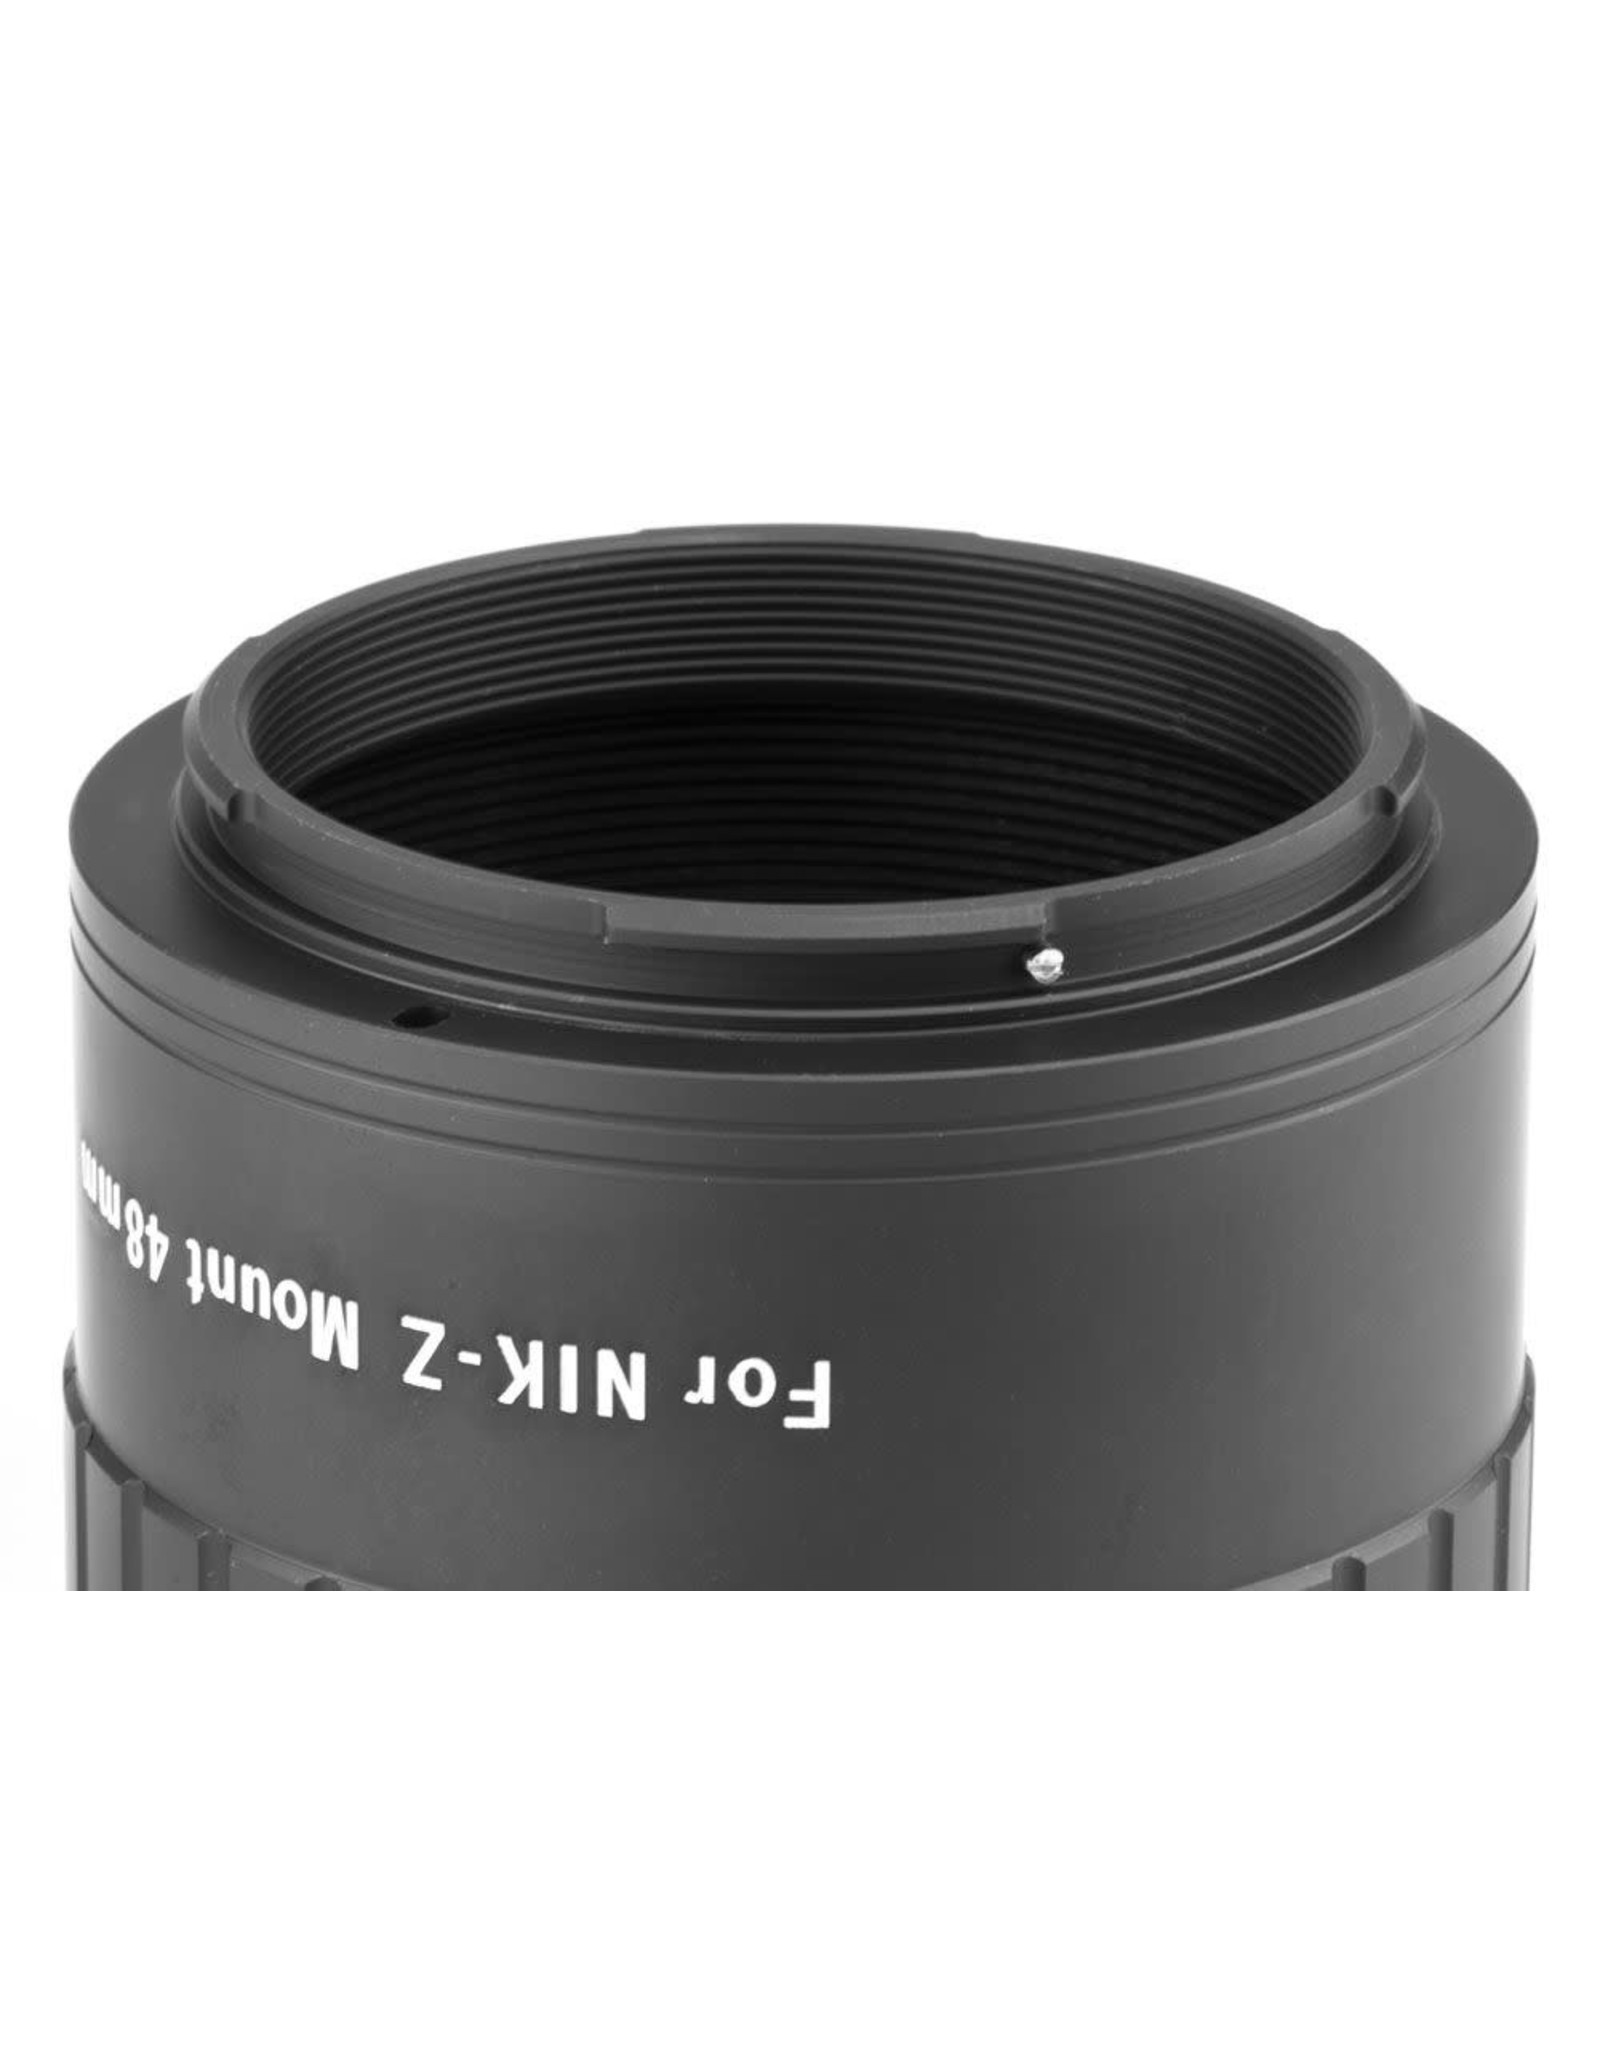 William Optics William Optics 48 mm T-Mount for Nikon Z Mirrorless Camera